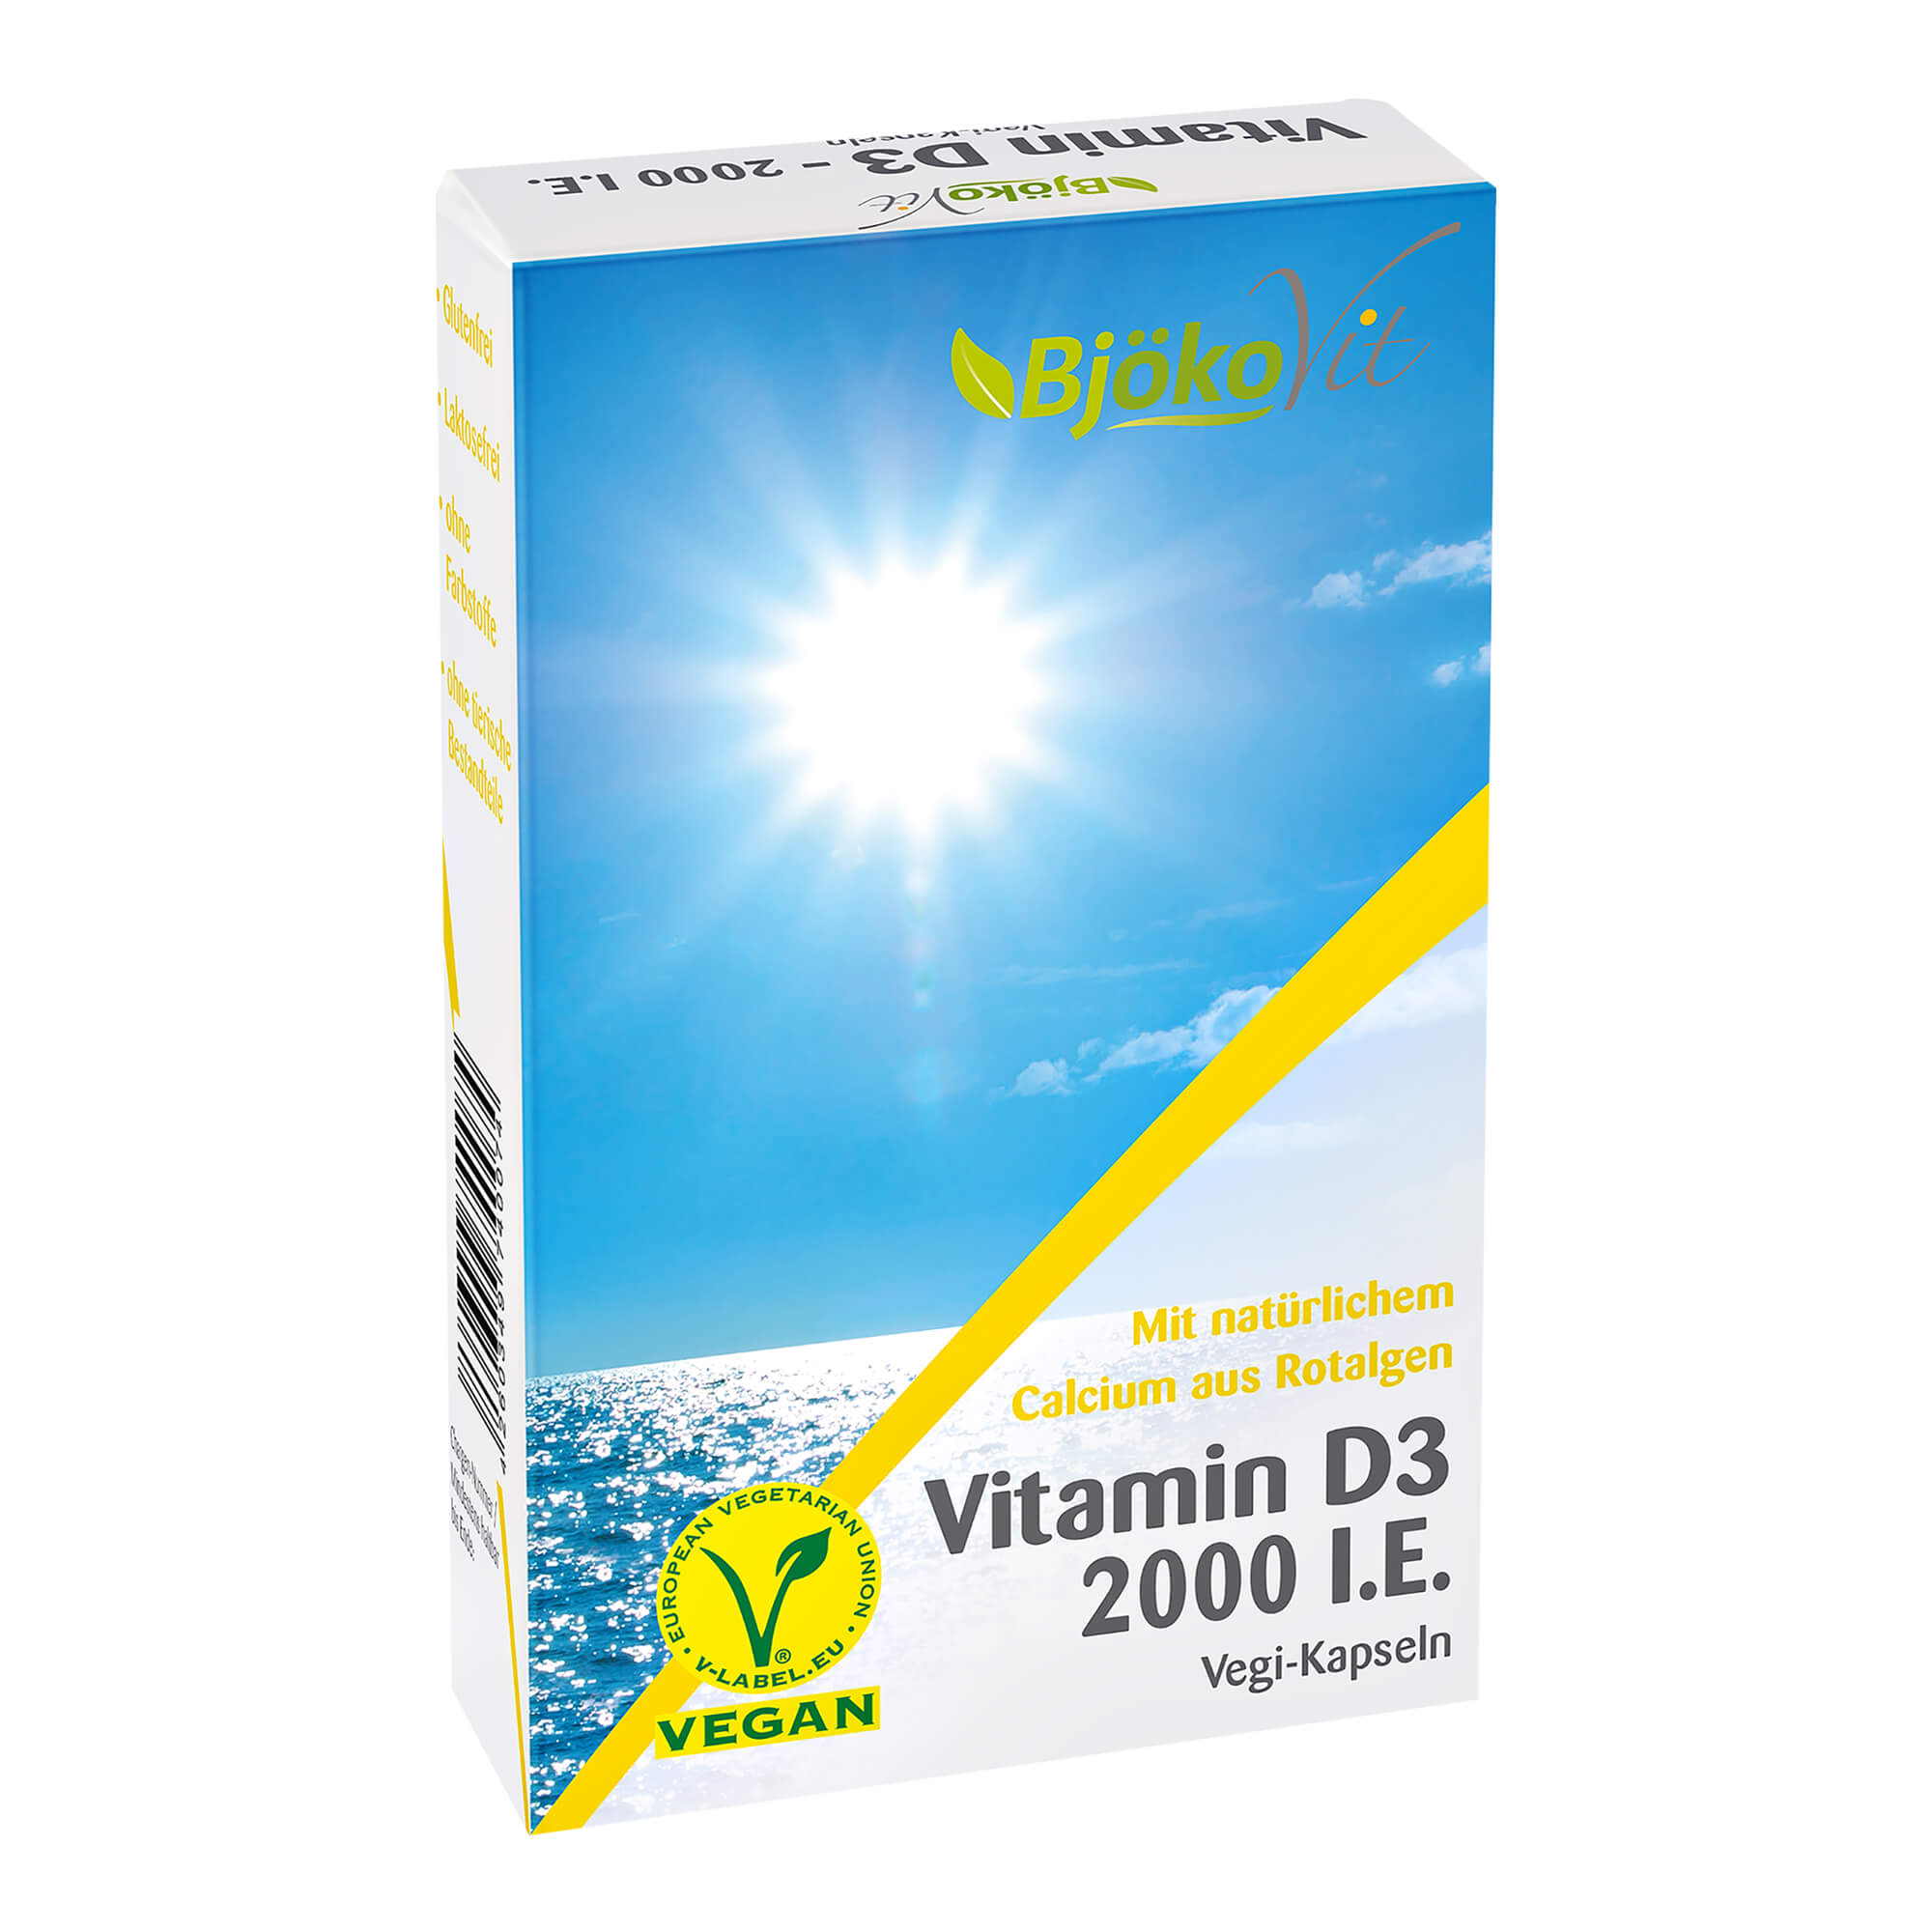 Nahrungsergänzungsmittel mit Vitamin D3, Calcium und Vitamin C (Vegan).